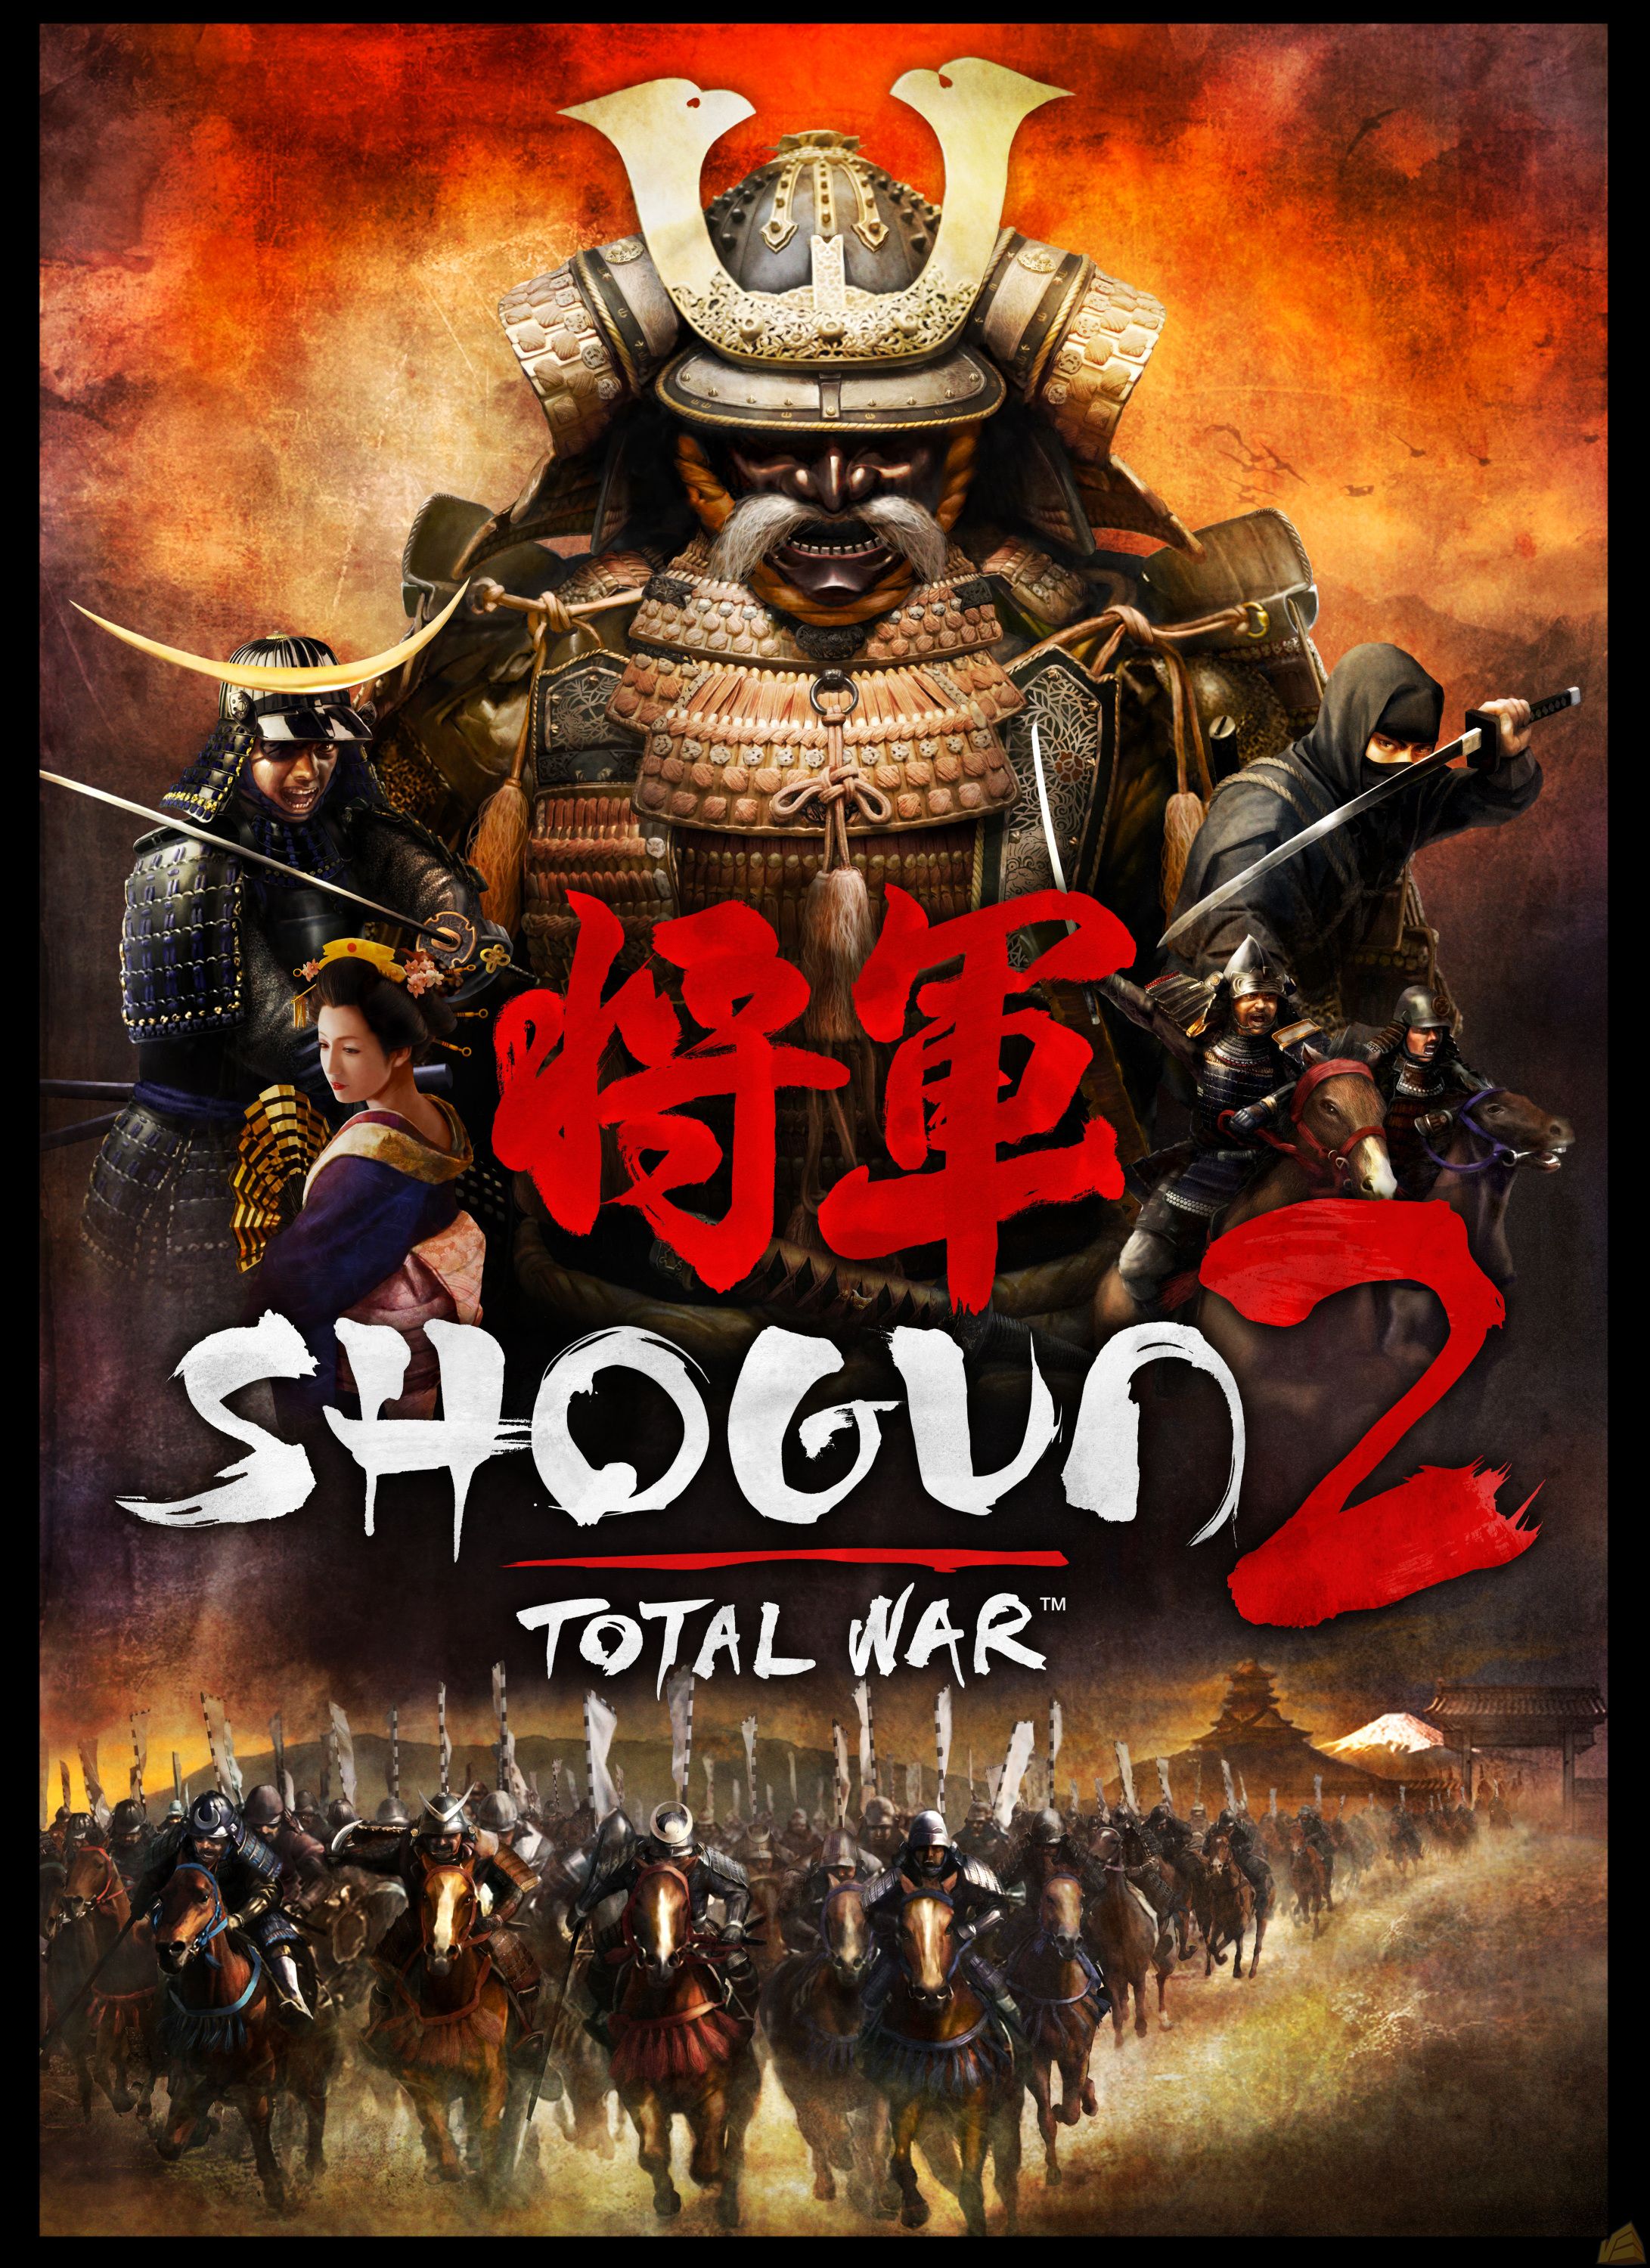 High Resolution Wallpaper | Total War: Shogun 2 2182x3000 px